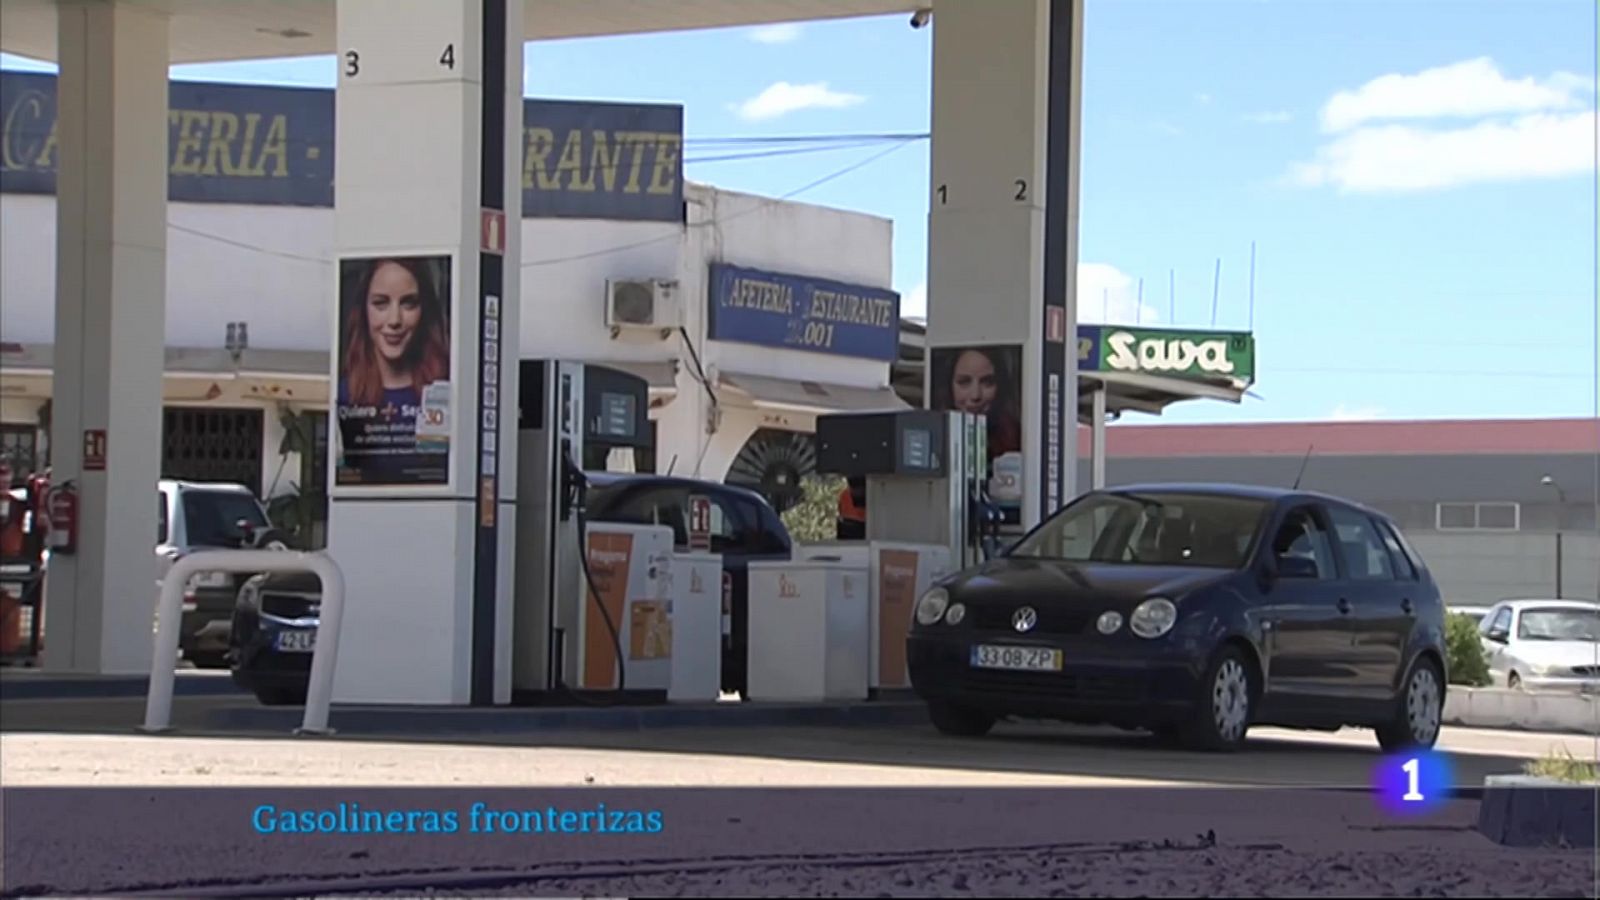 La bonificación de los combustibles dispara las ventas de las gasolineras fronterizas - RTVE.es